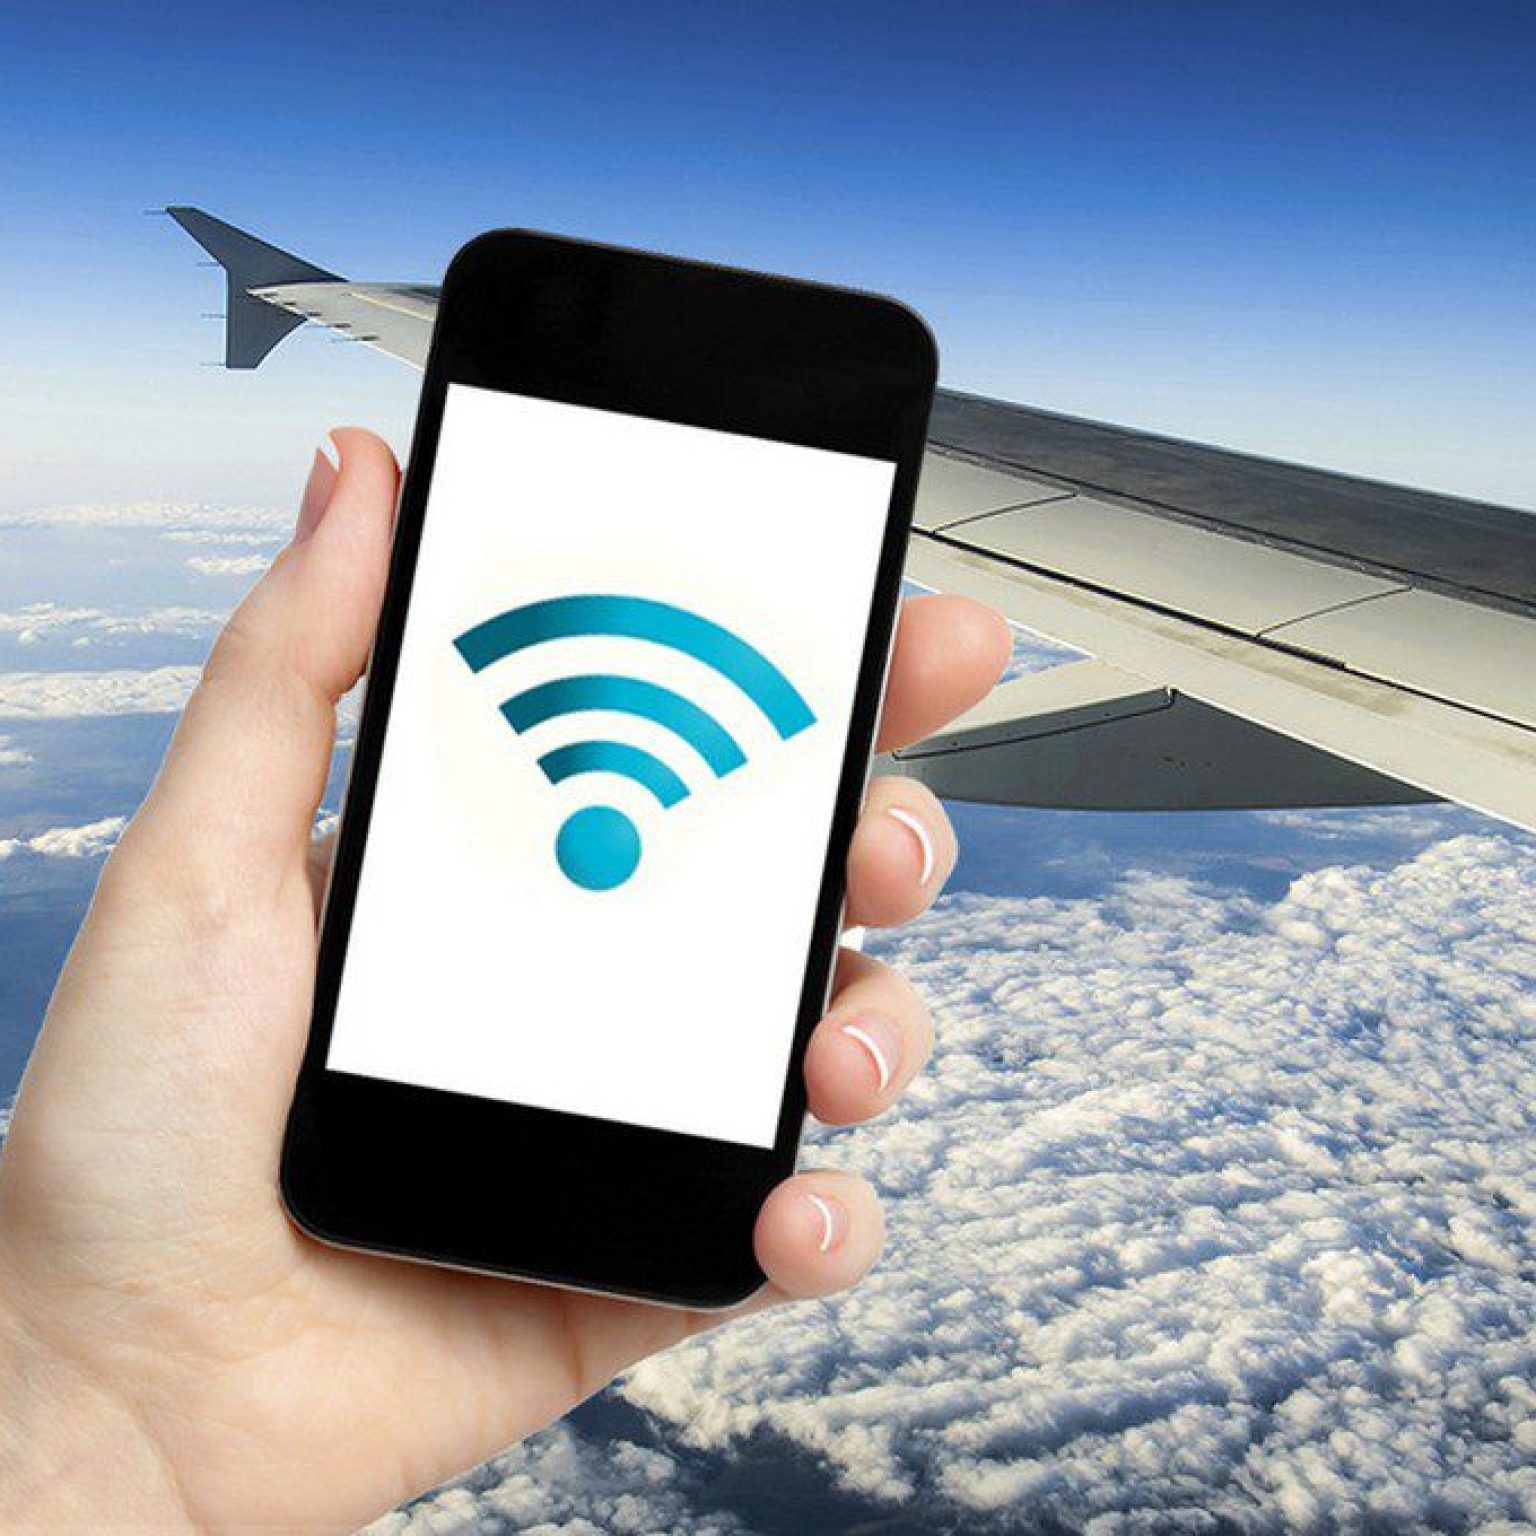 Интернет в самолете: есть ли вай фай и как им пользоваться